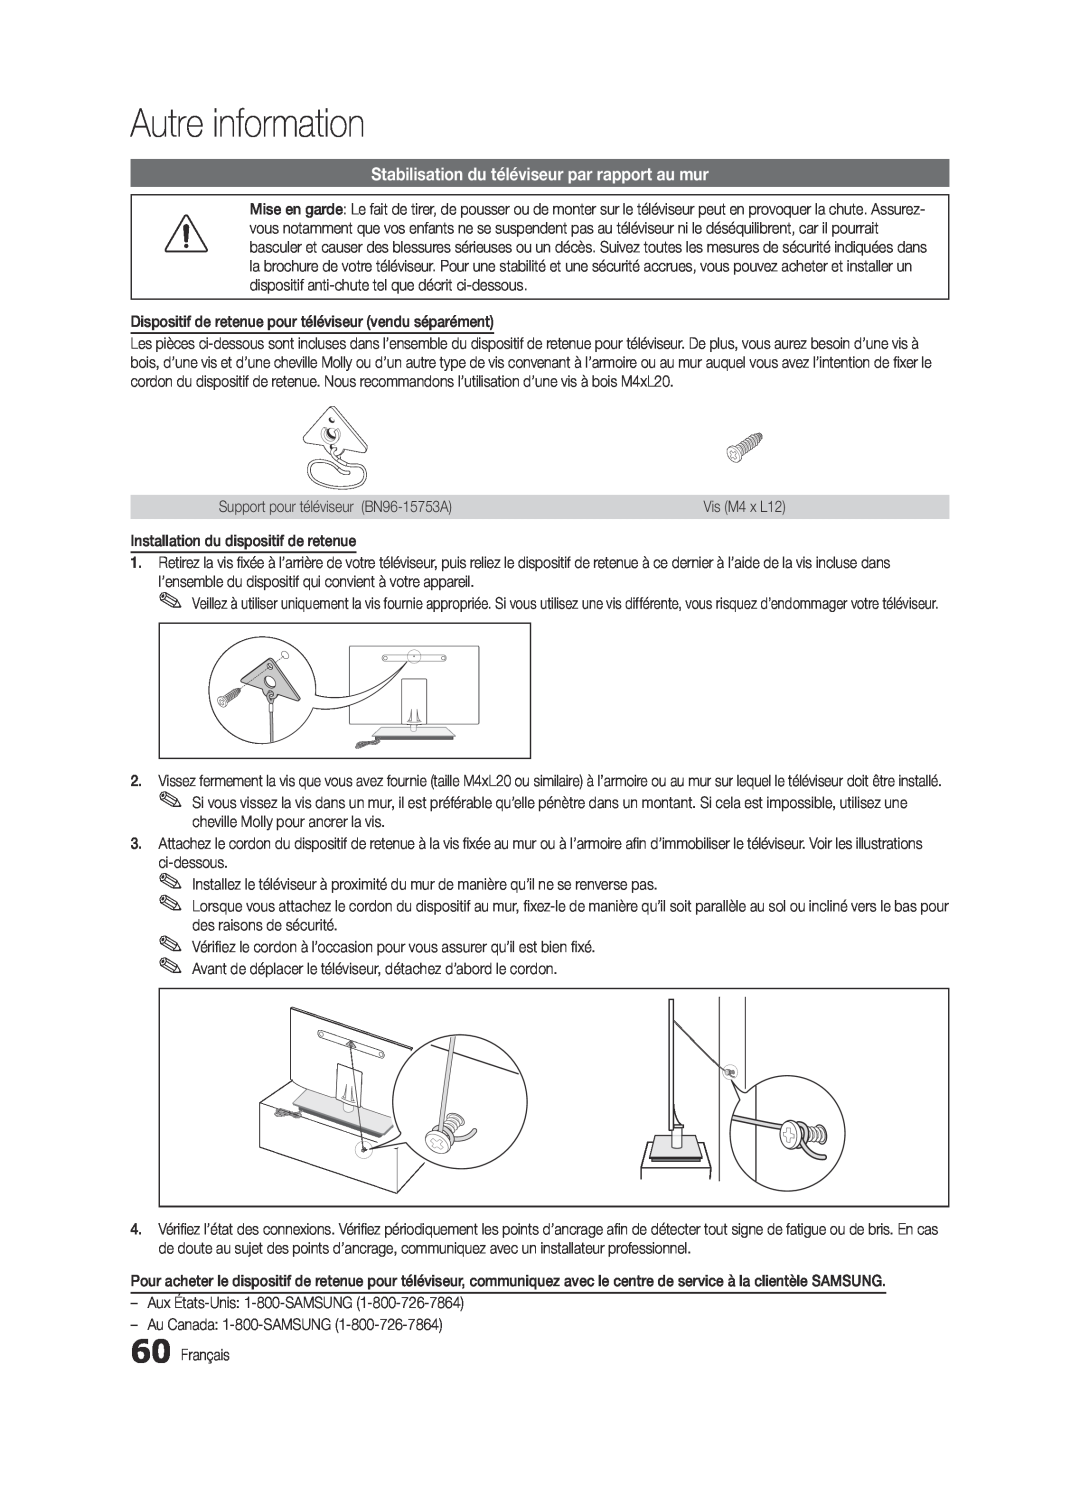 Samsung BN68-03088A-01, Series C9 user manual Stabilisation du téléviseur par rapport au mur, Autre information 